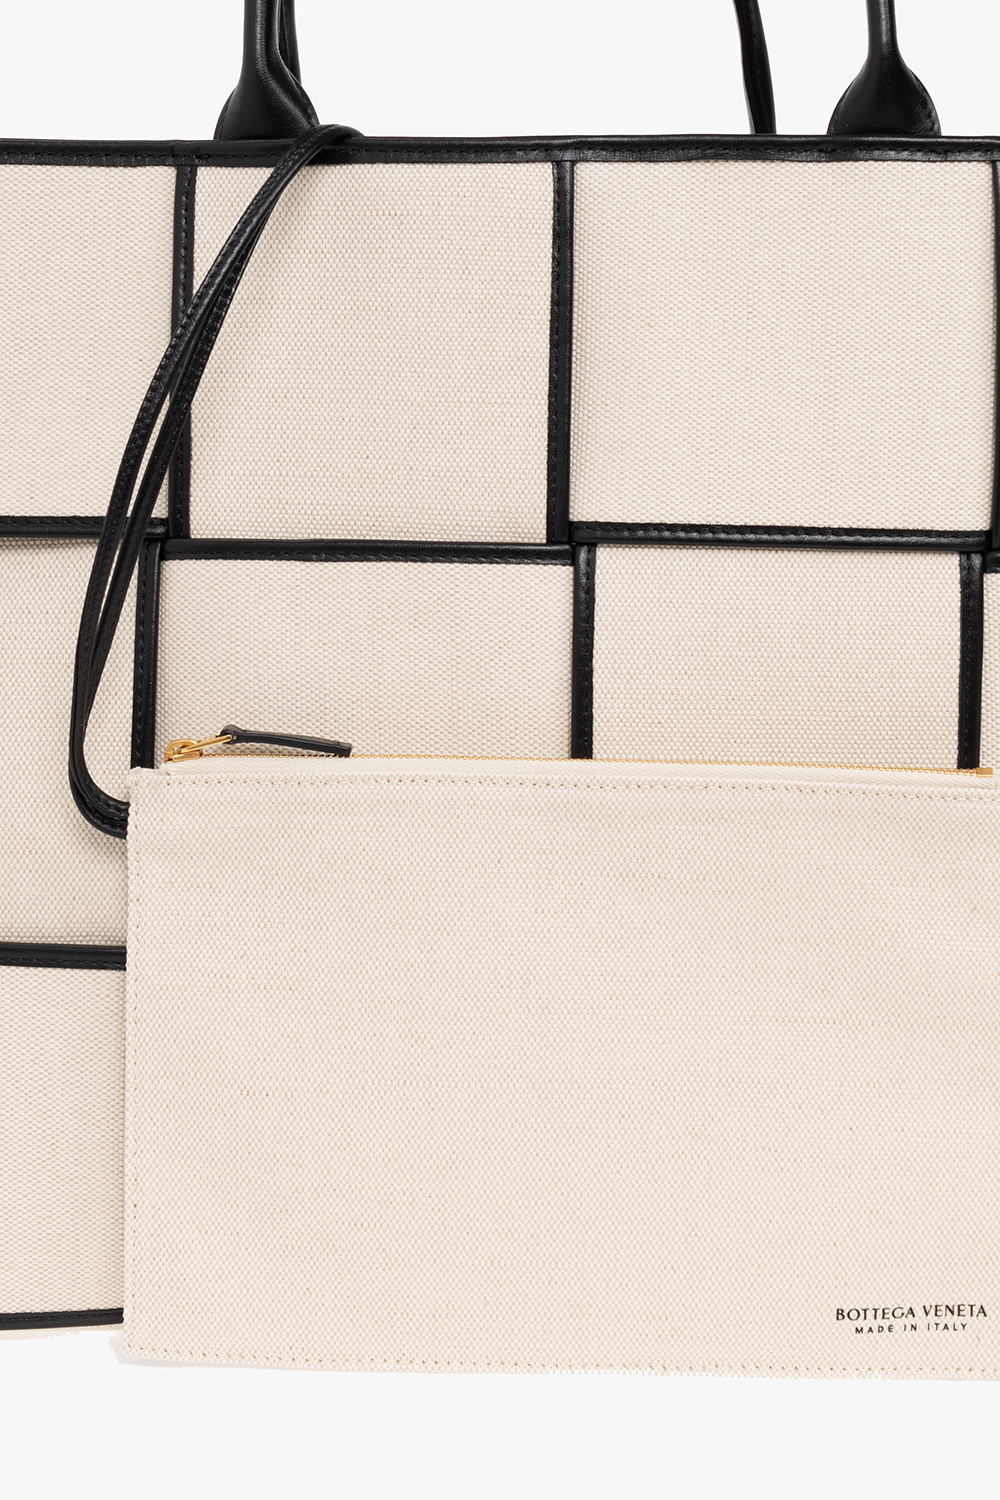 bottega knitted Veneta ‘Arco Large’ shopper bag